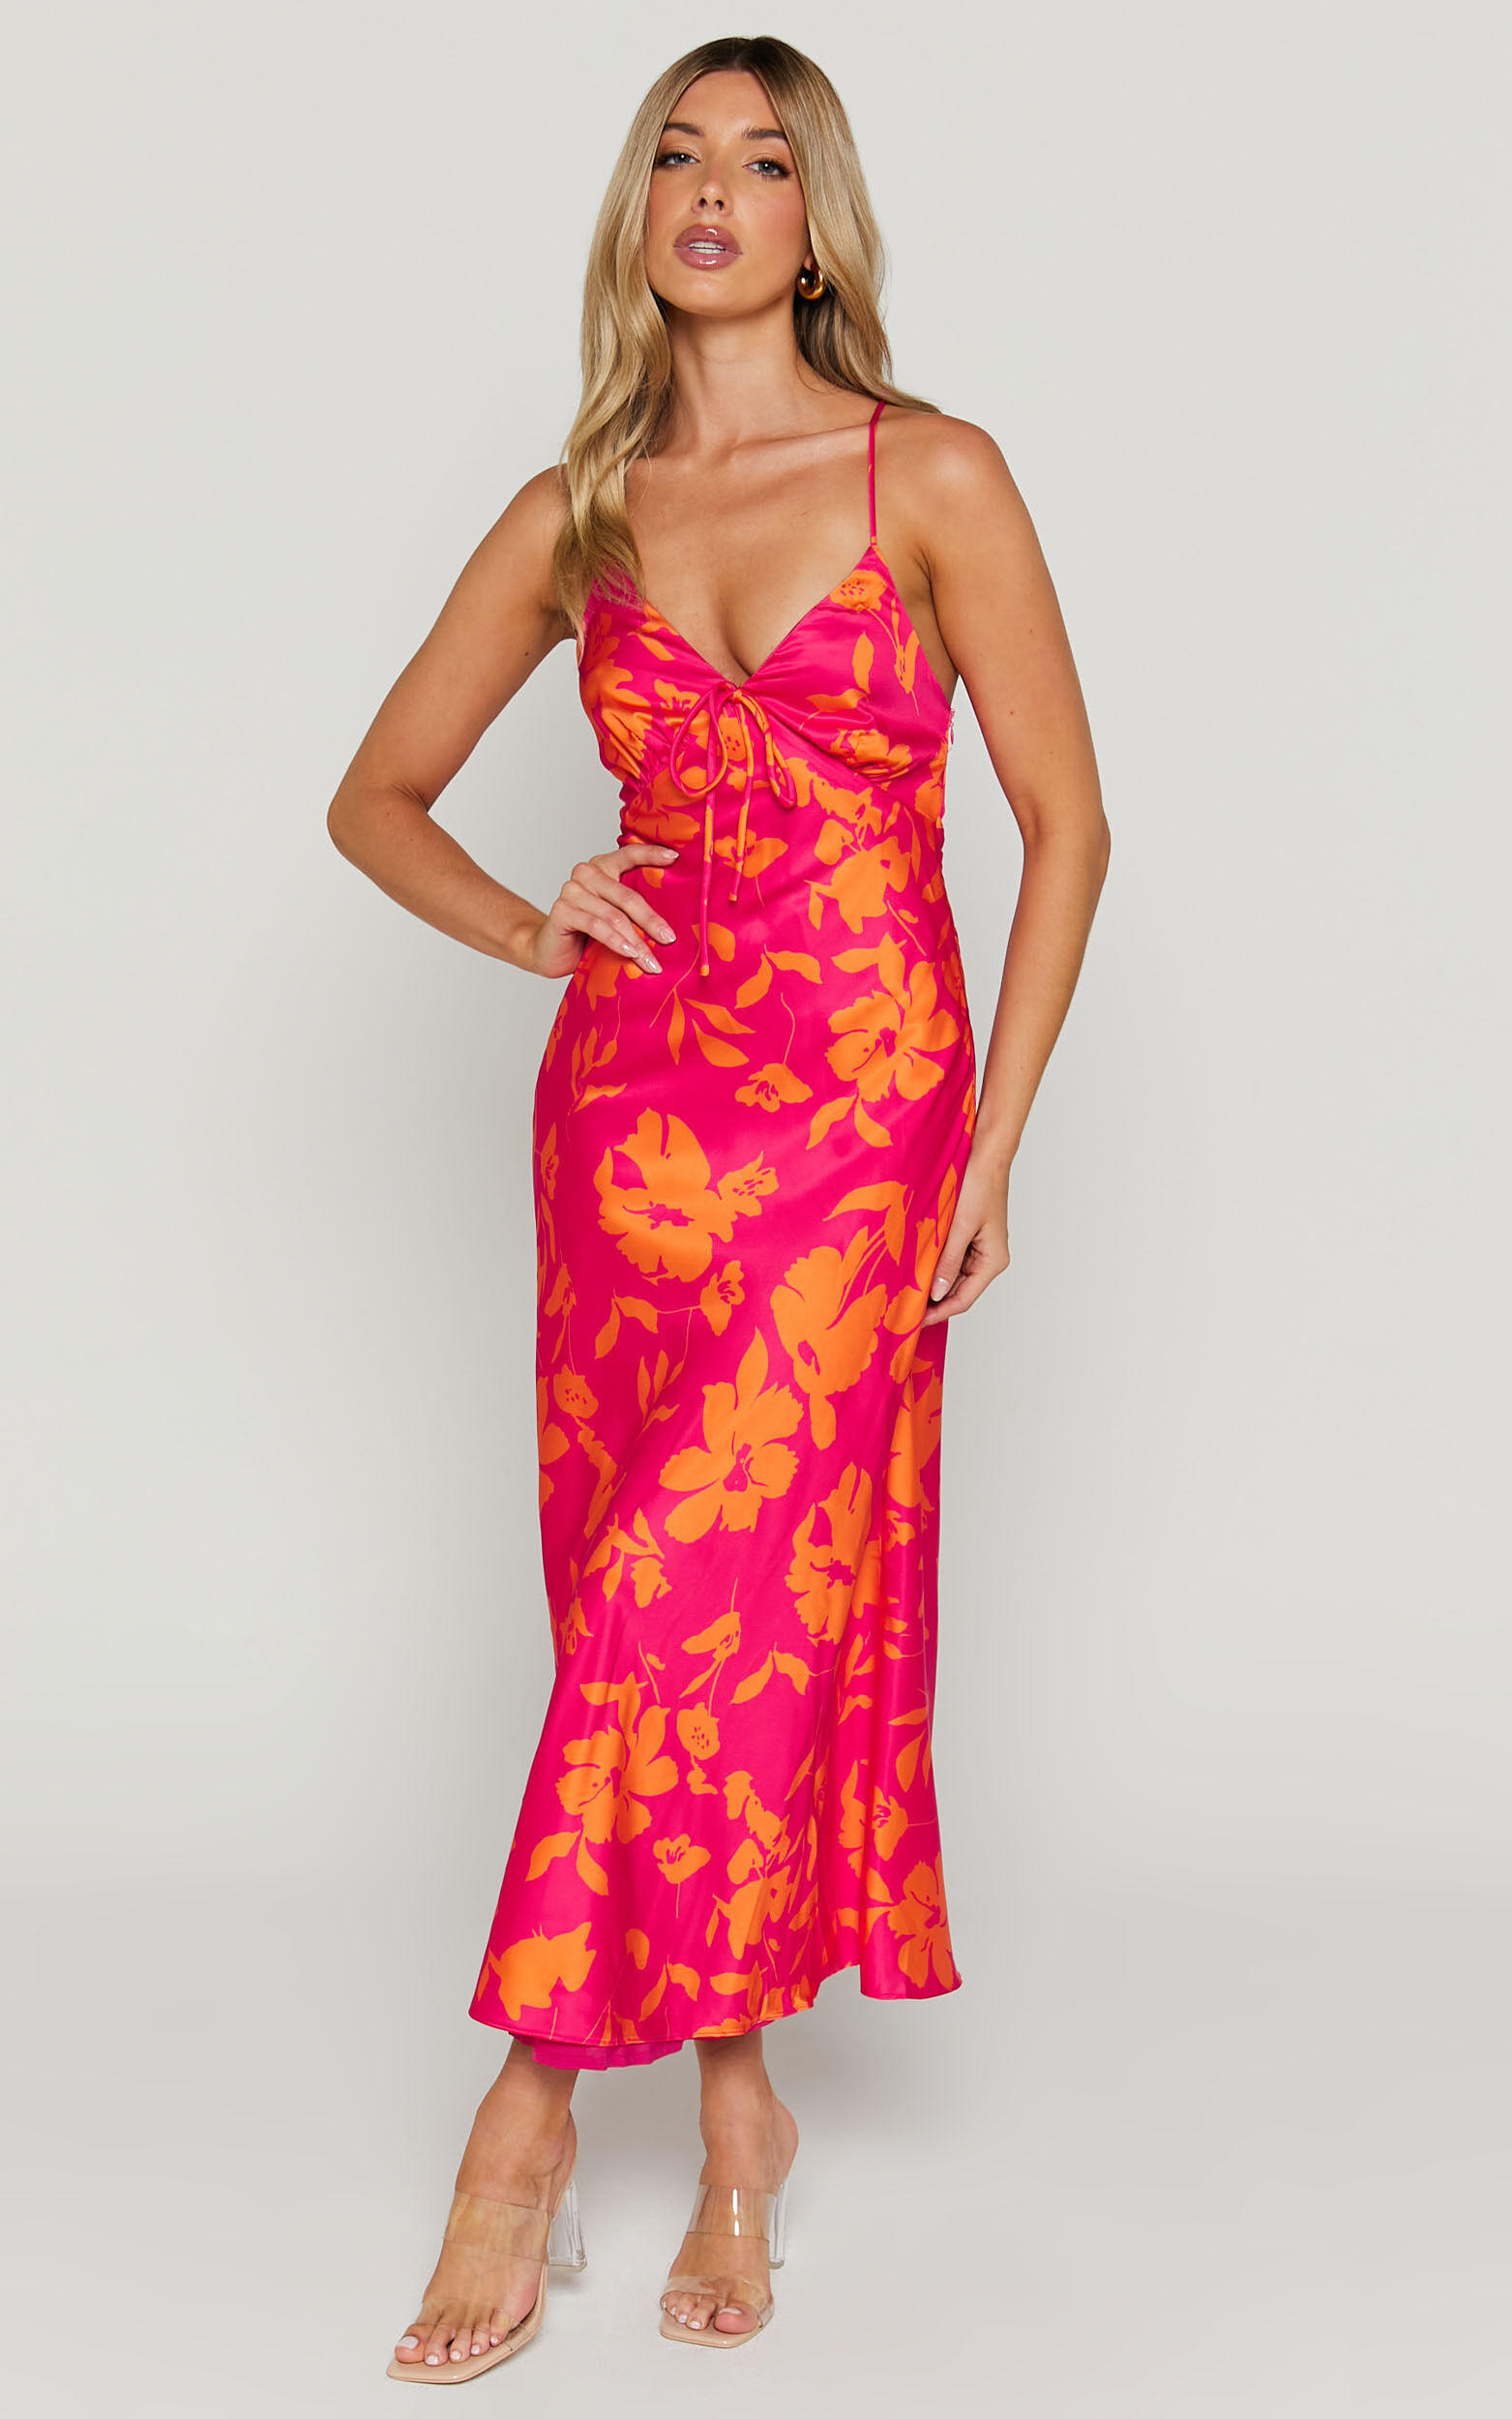 Marvey Midaxi Dress - Wide V Neck Sleeveless Dress in Pink & Orange Floral - 06, PNK1